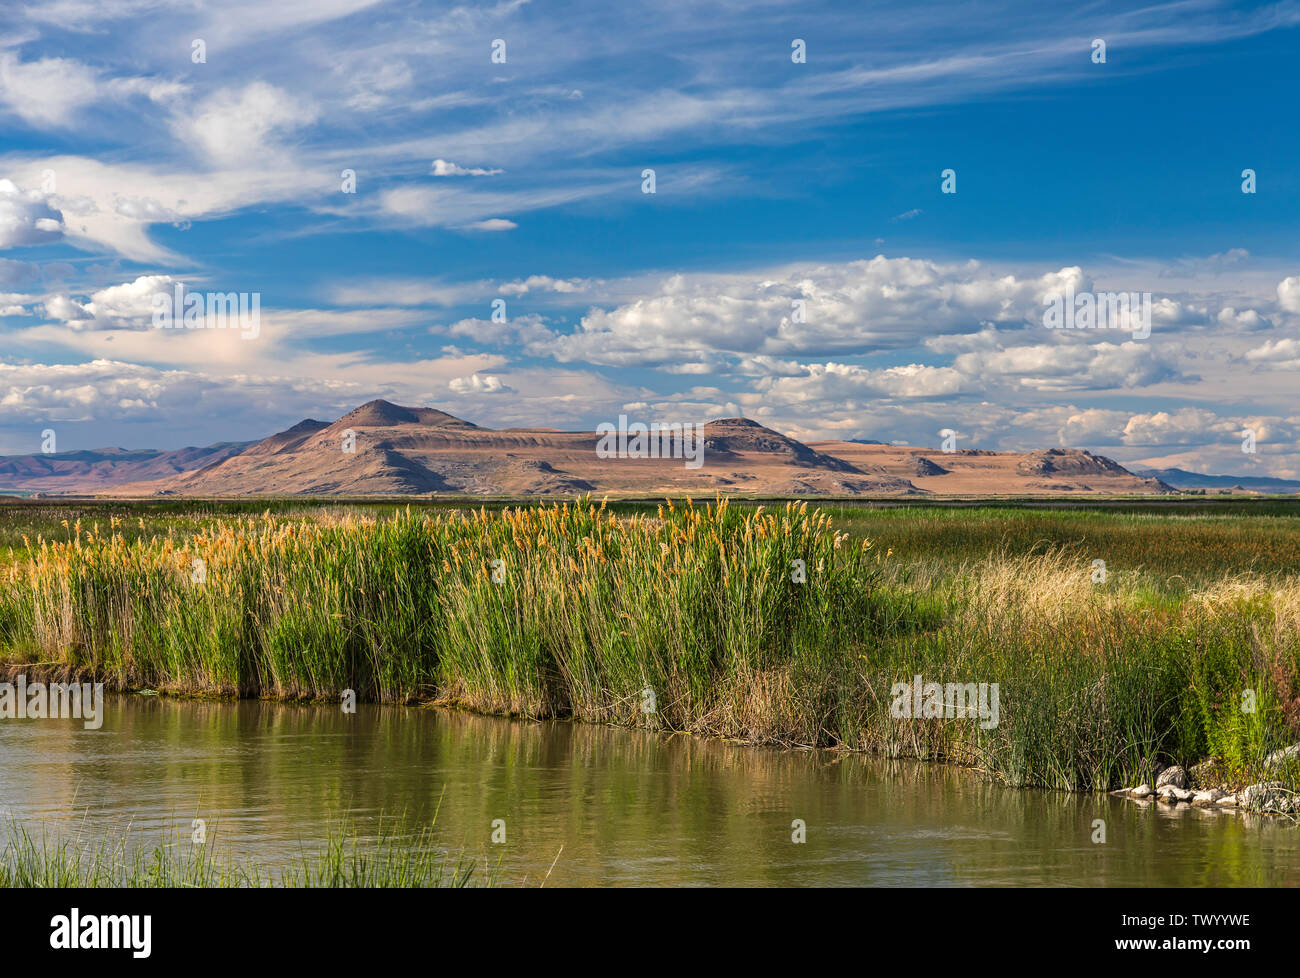 C'est une vue d'une splendide journée d'été au Refuge d'oiseaux migrateurs de la rivière de l'ours près de Brigham City, Utah, USA. Banque D'Images